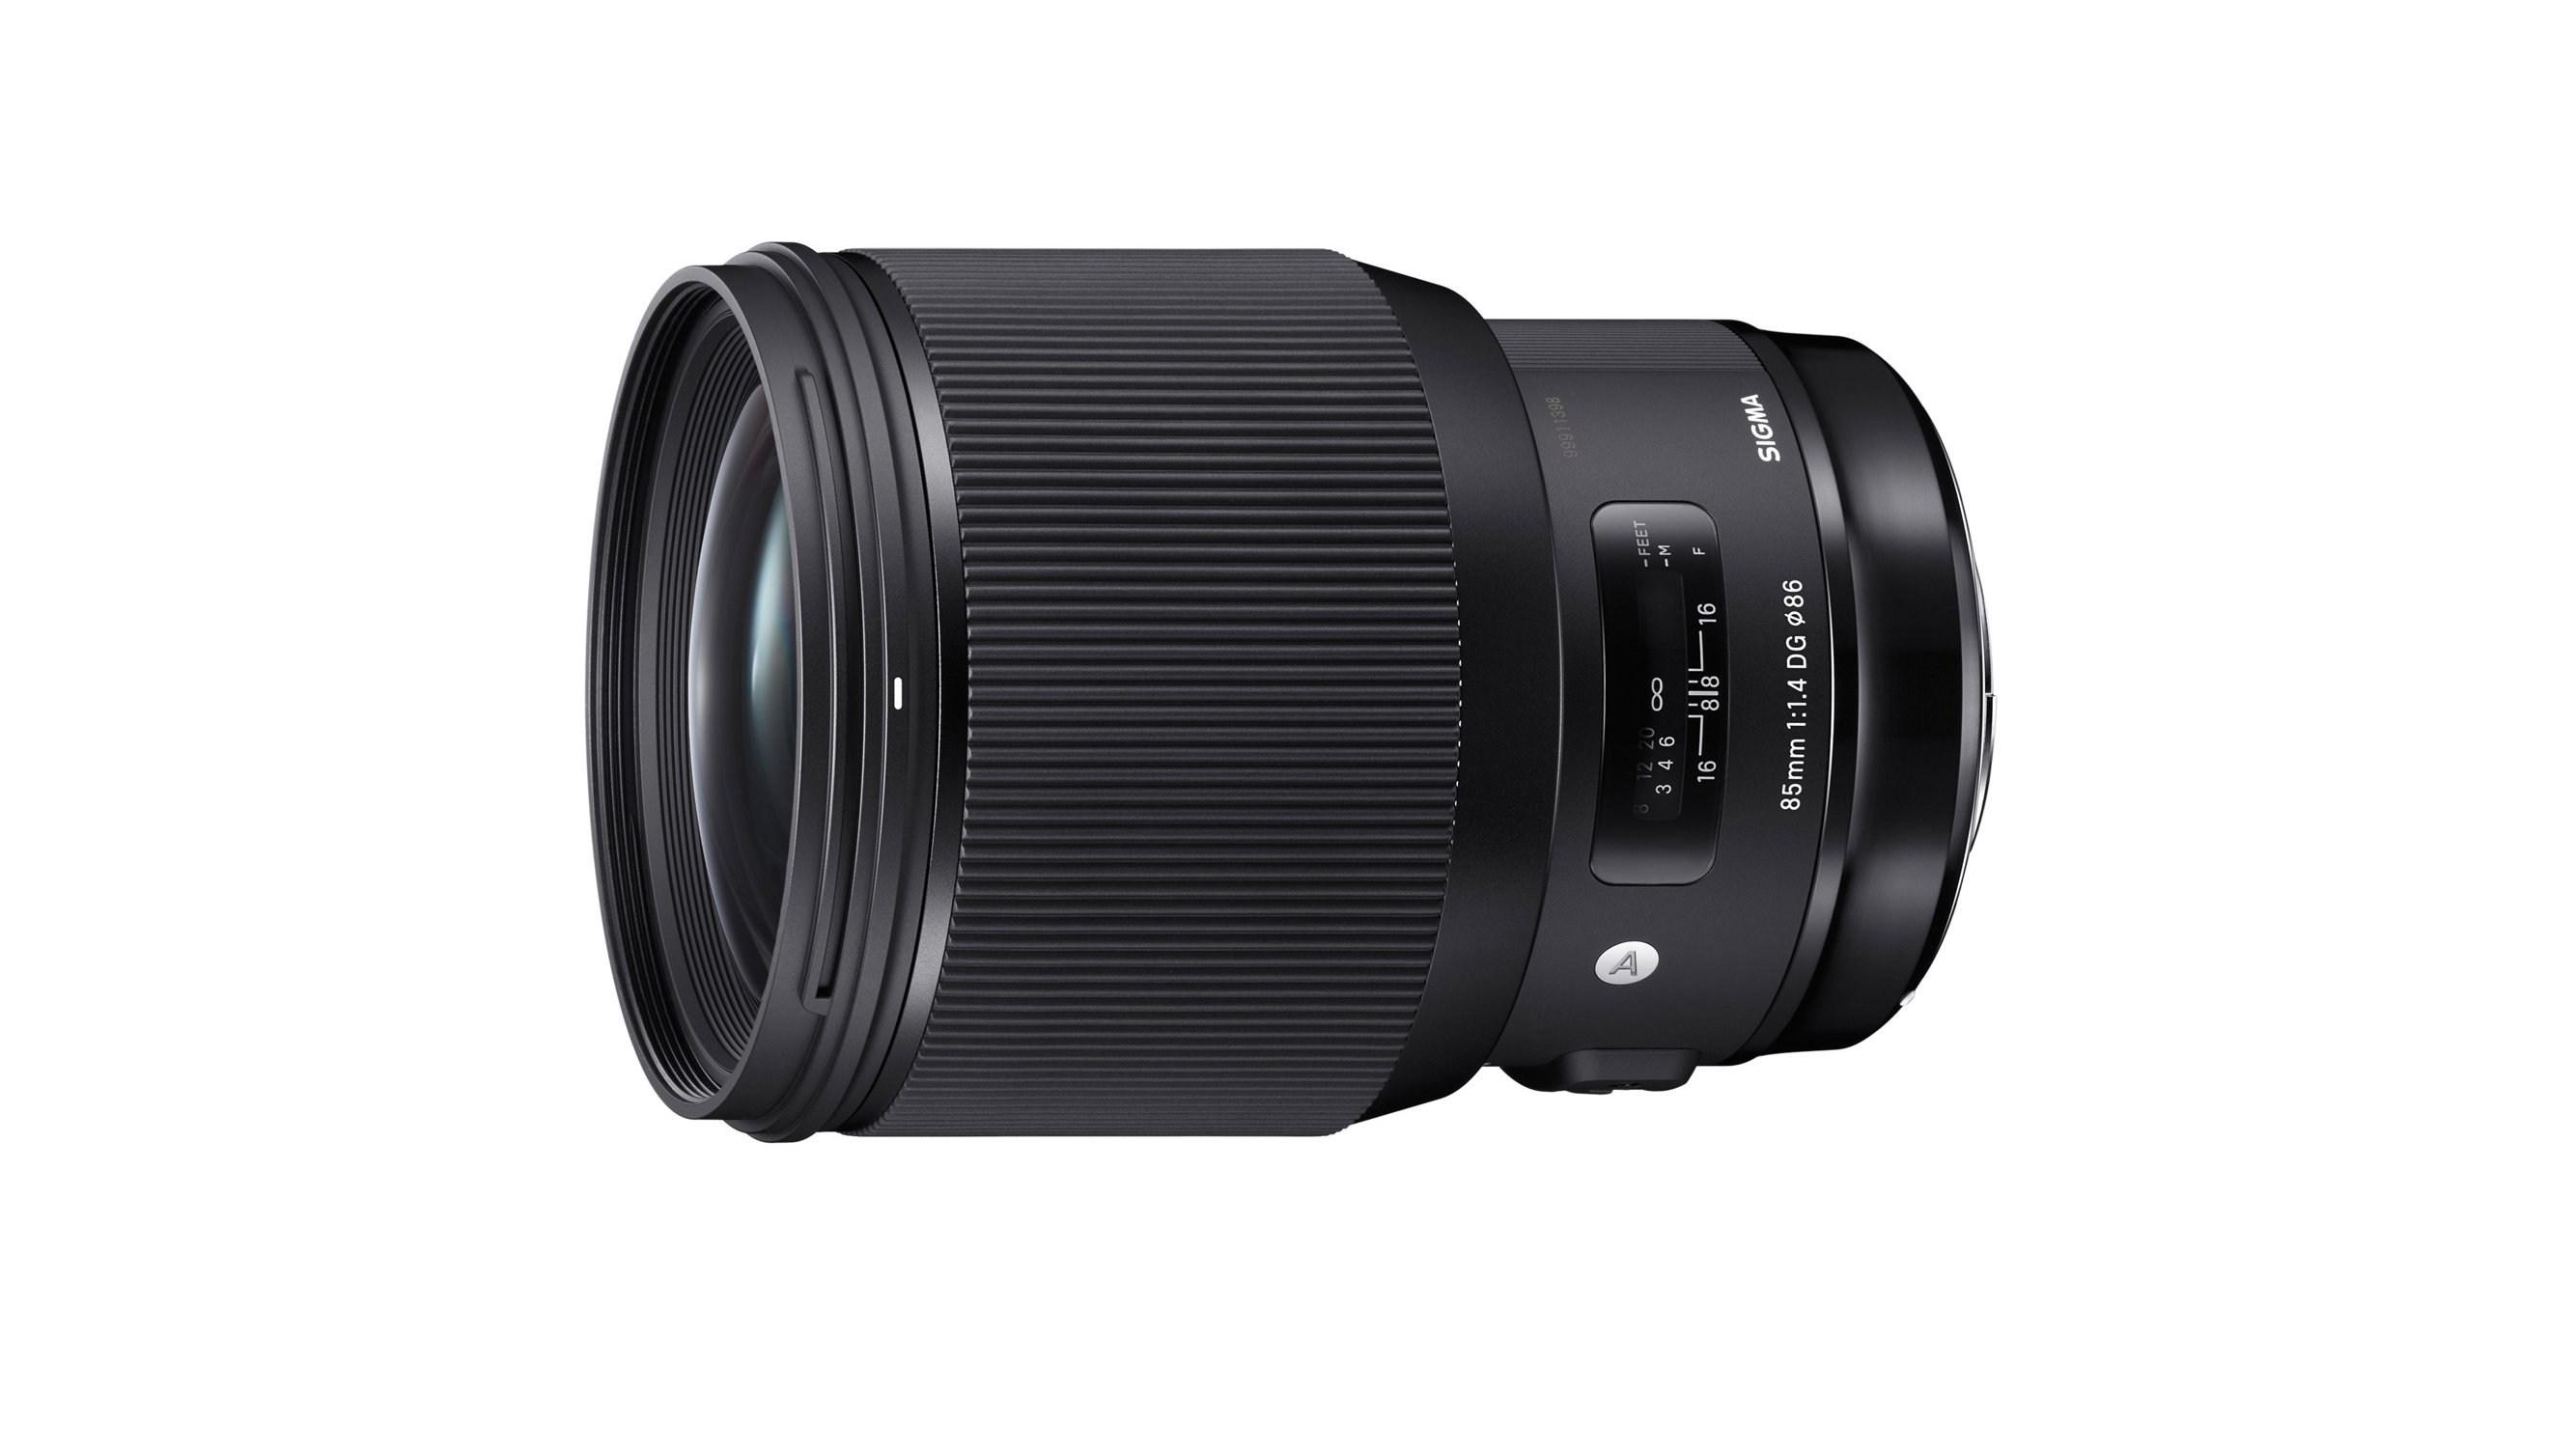 Best Nikon portrait lens: Sigma 85mm f/1.4 DG HSM | A